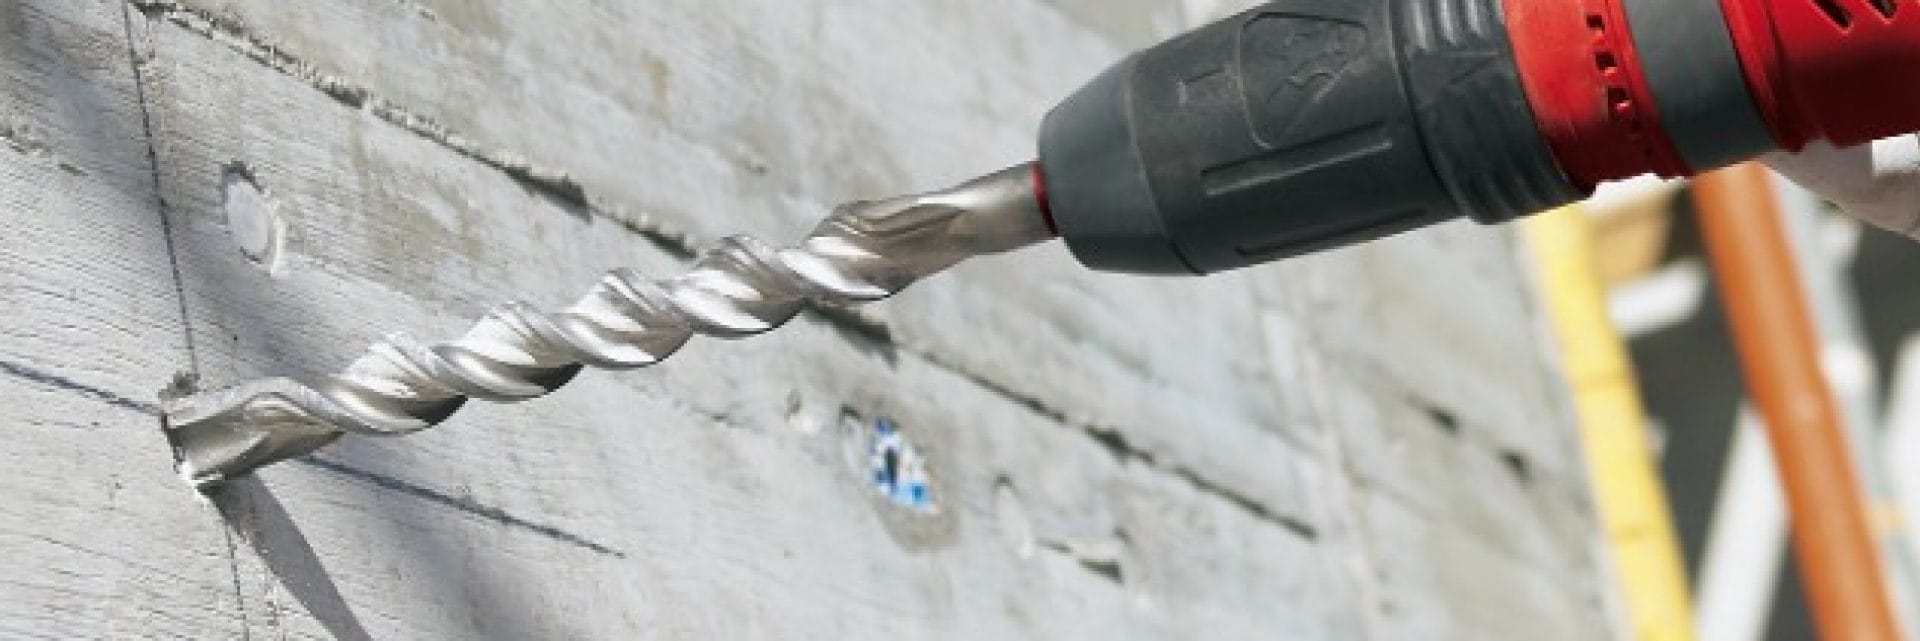 Hilti TE-YX drill bits for concrete drilling